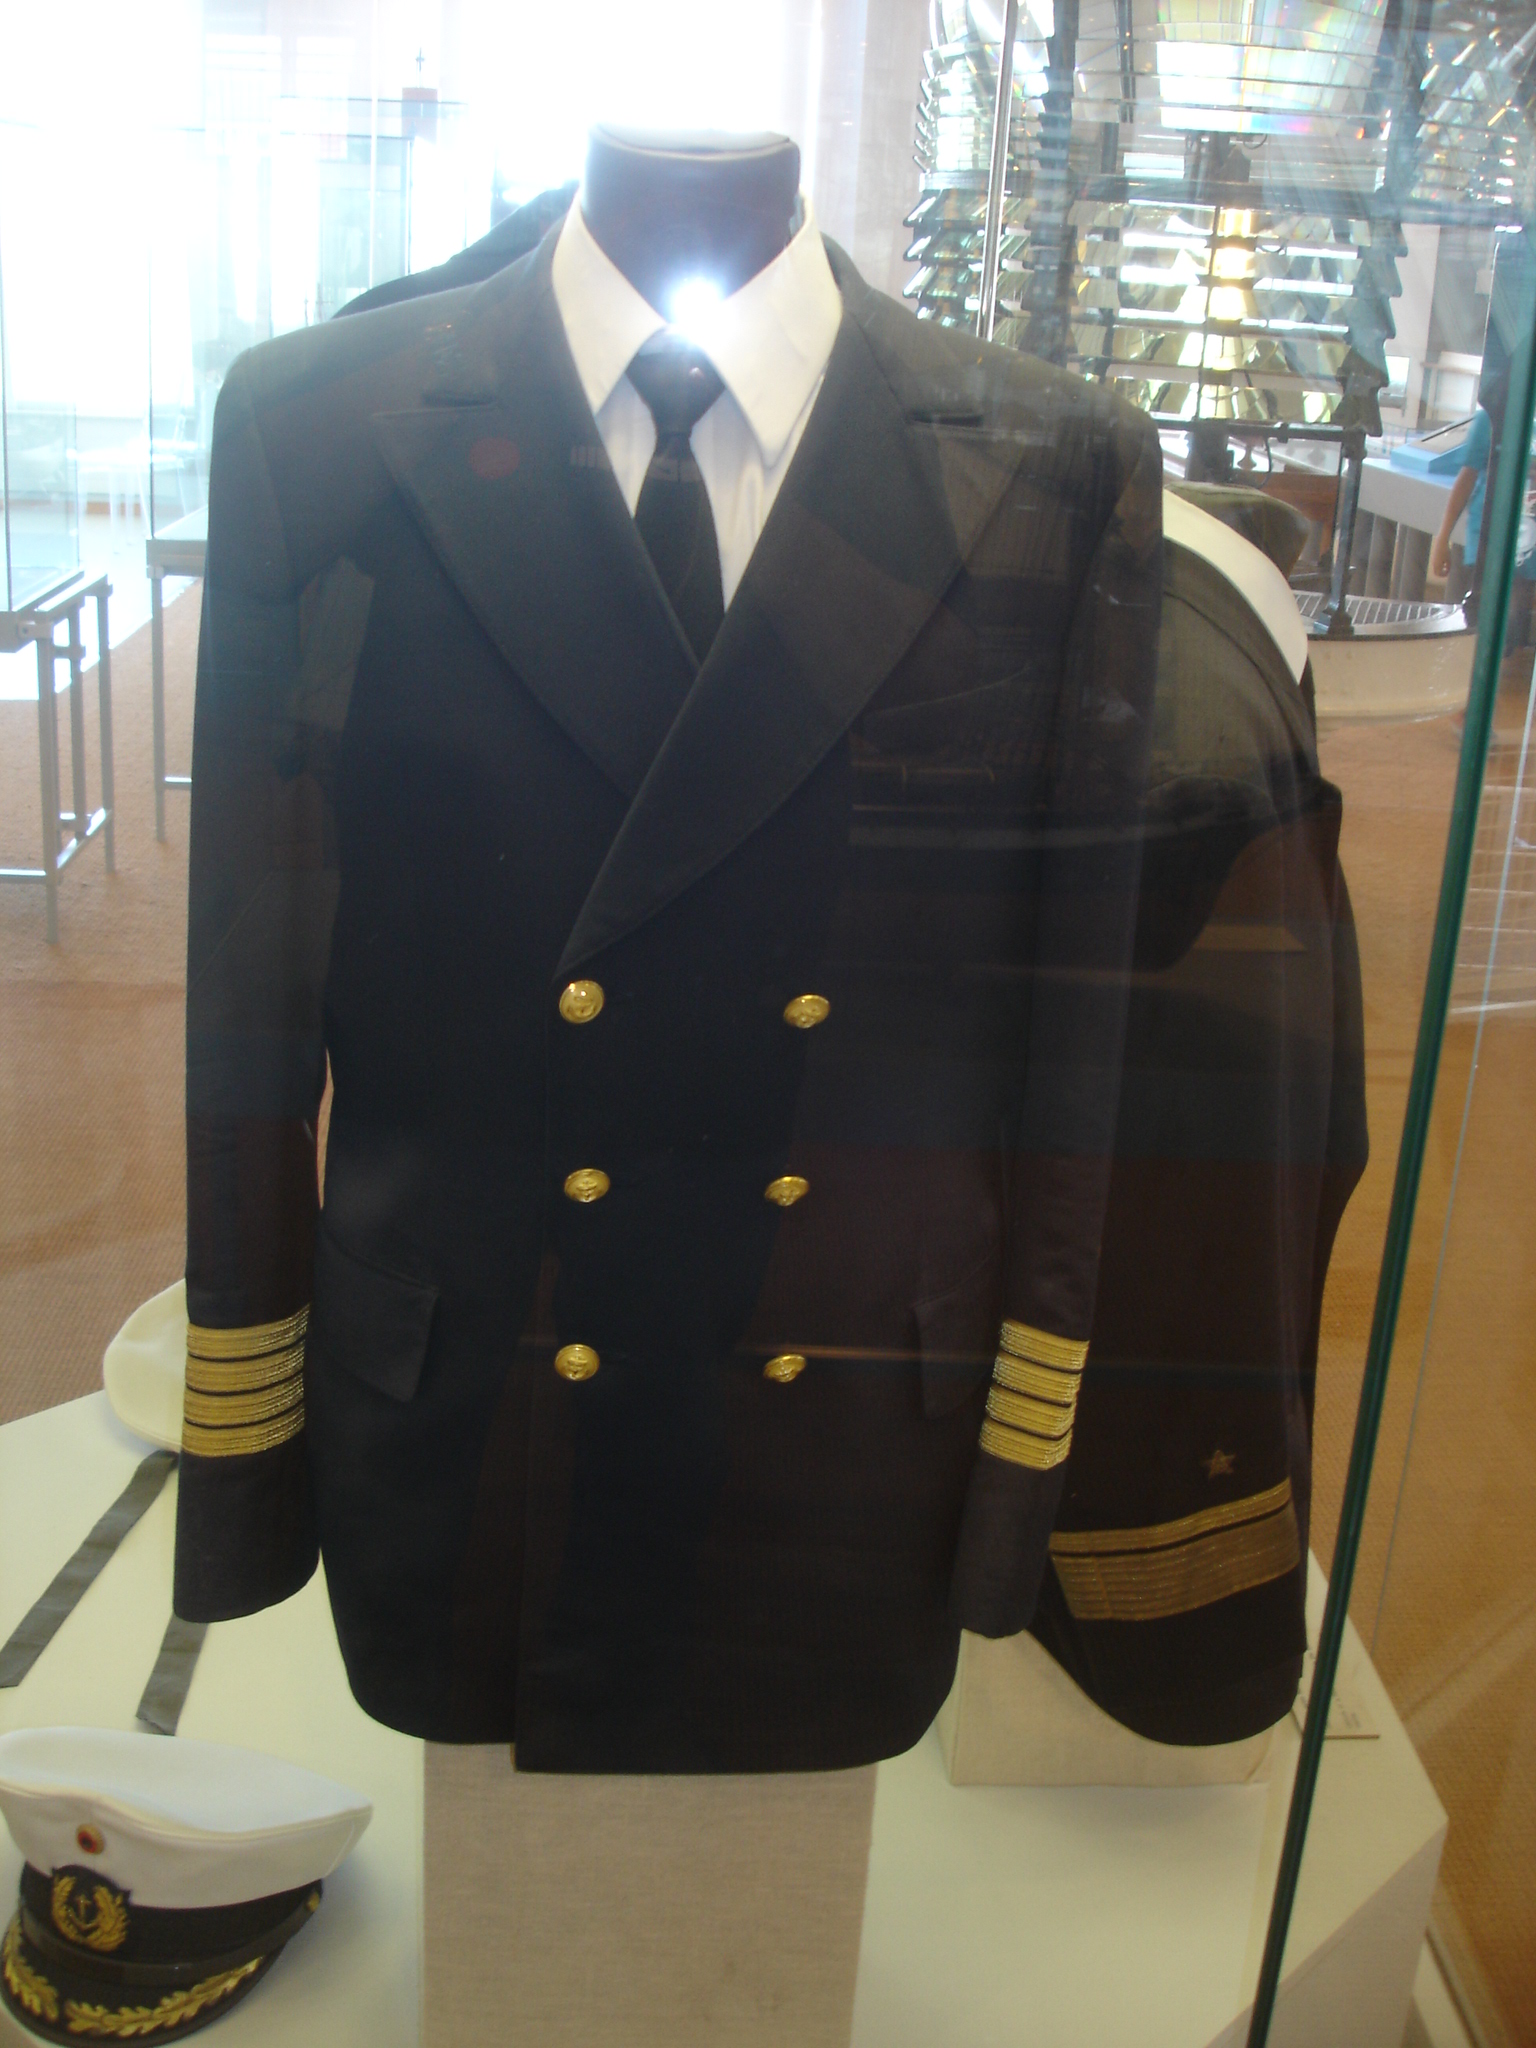 Links die Uniform eines Kapitän zur See ...
Rechts Admiralsuniform